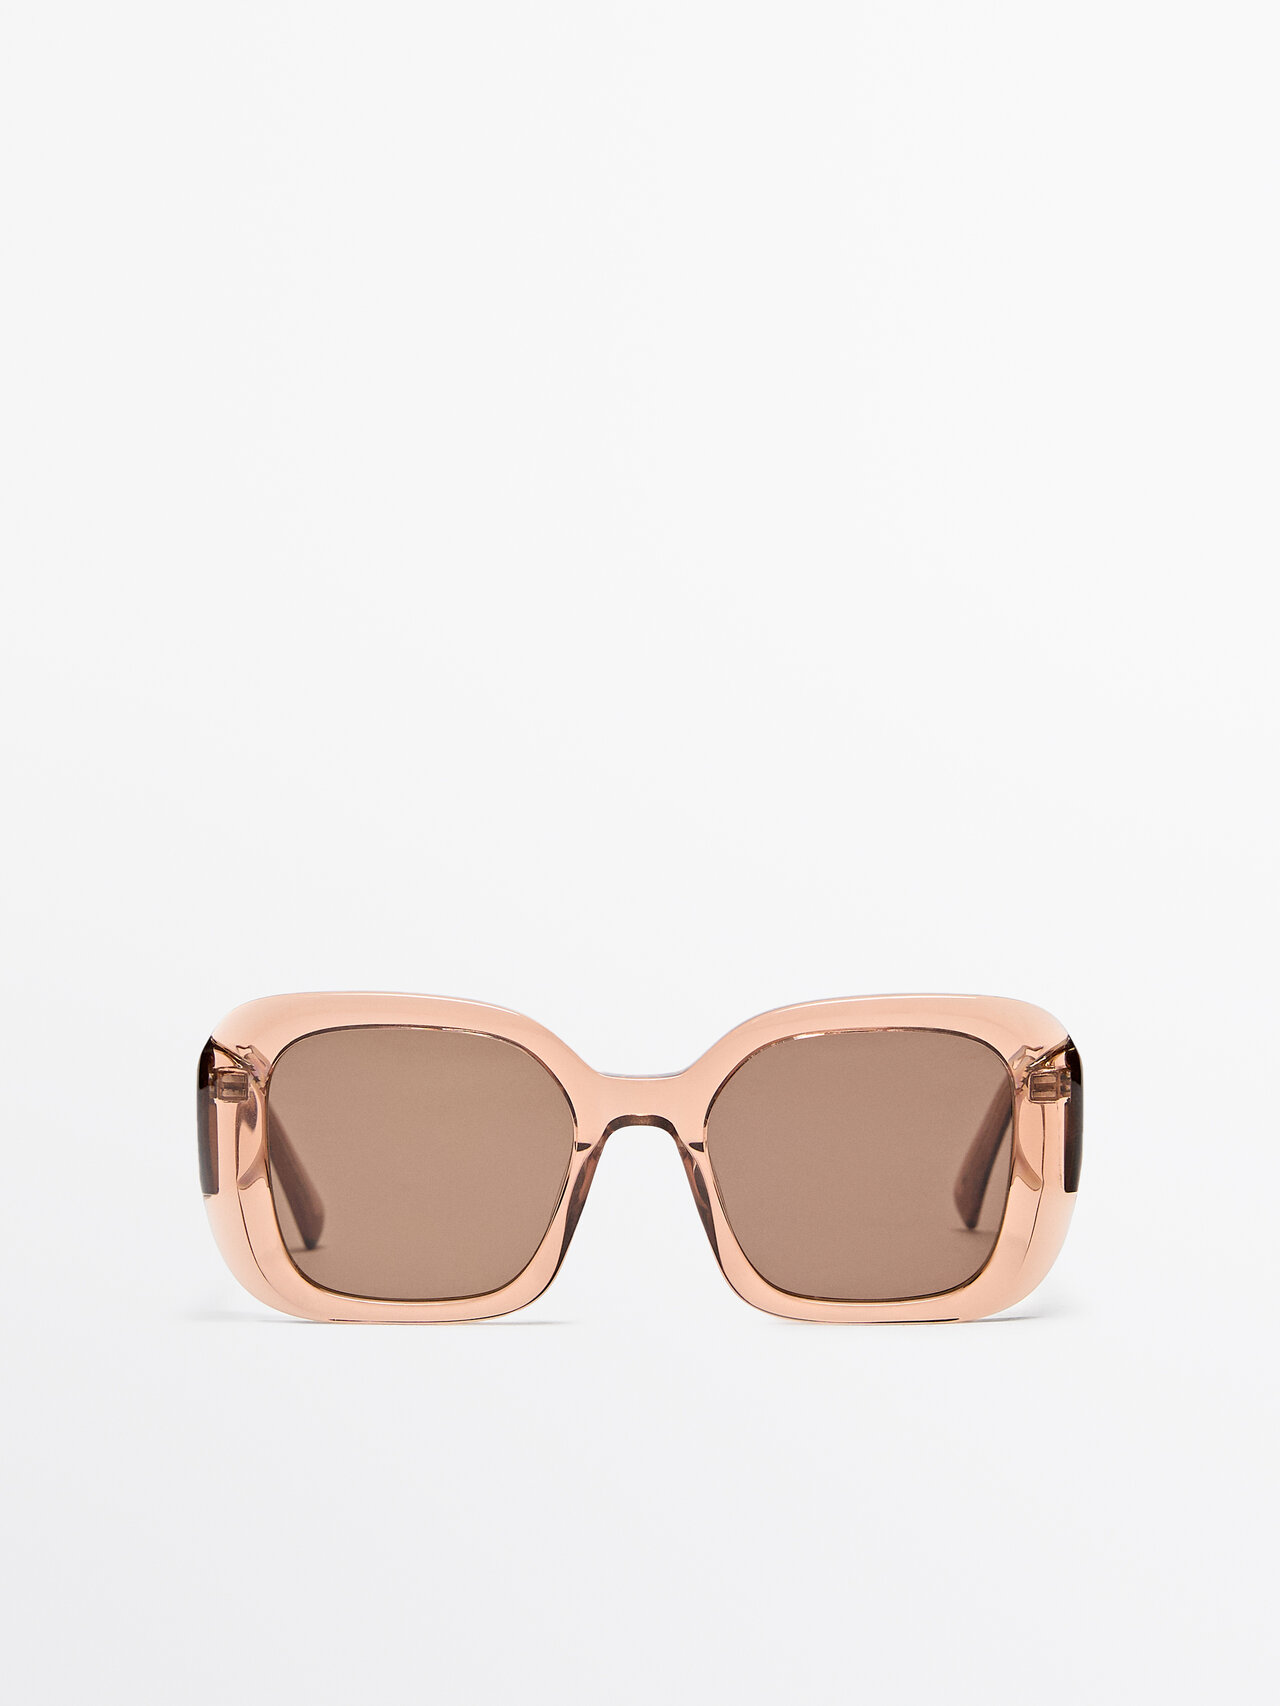 Massimo Dutti Square Sunglasses In Pink